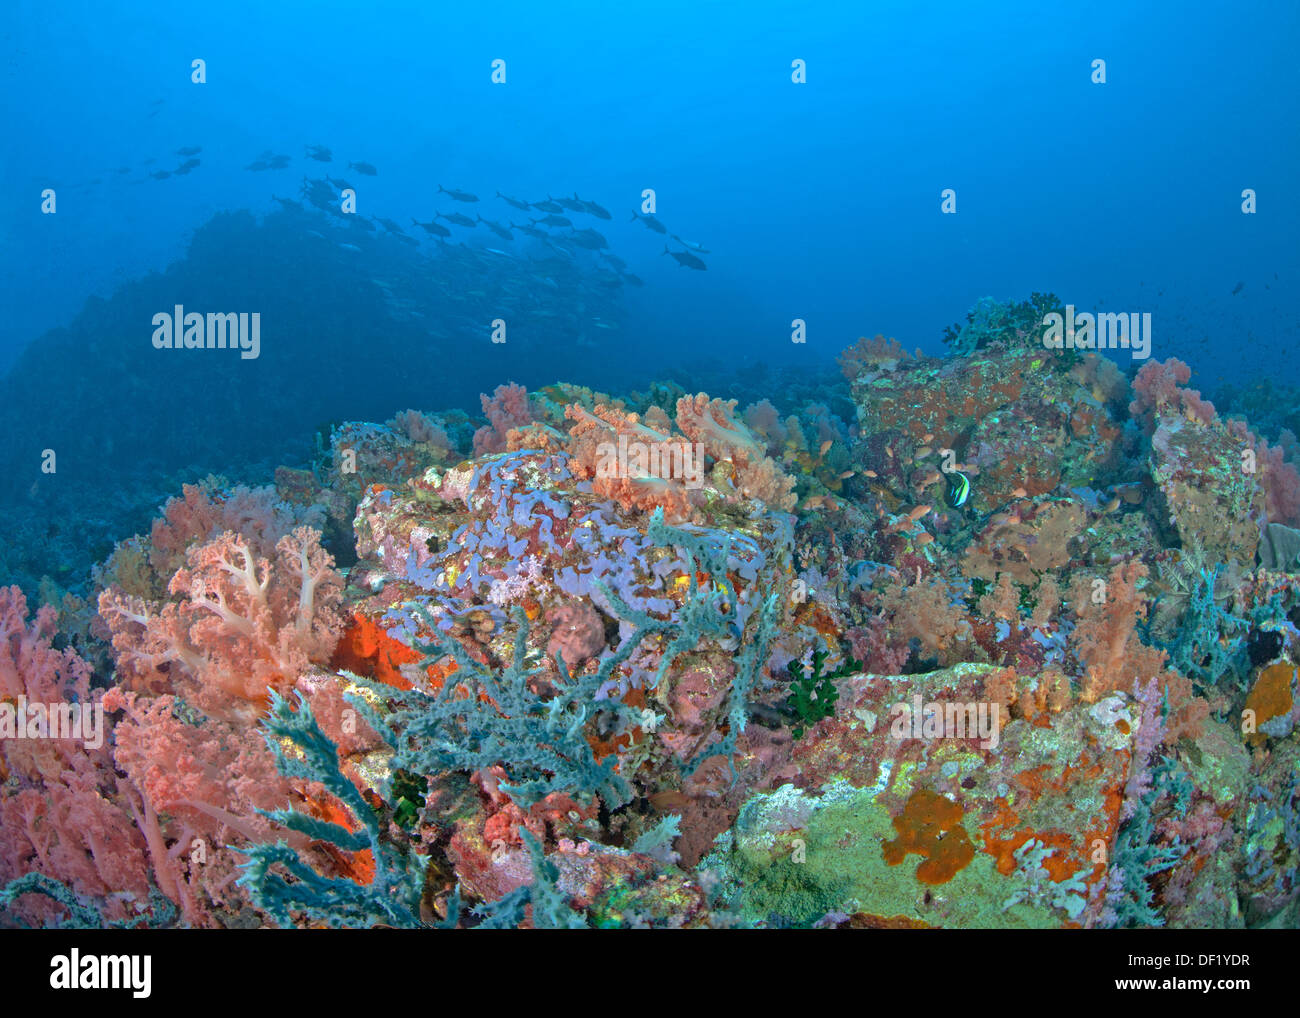 Soft Coral alberi piegati da rigide oceano corrente con silhouette di un atollo in blu sullo sfondo dell'acqua. Verde isola il passaggio, Filippine. Foto Stock